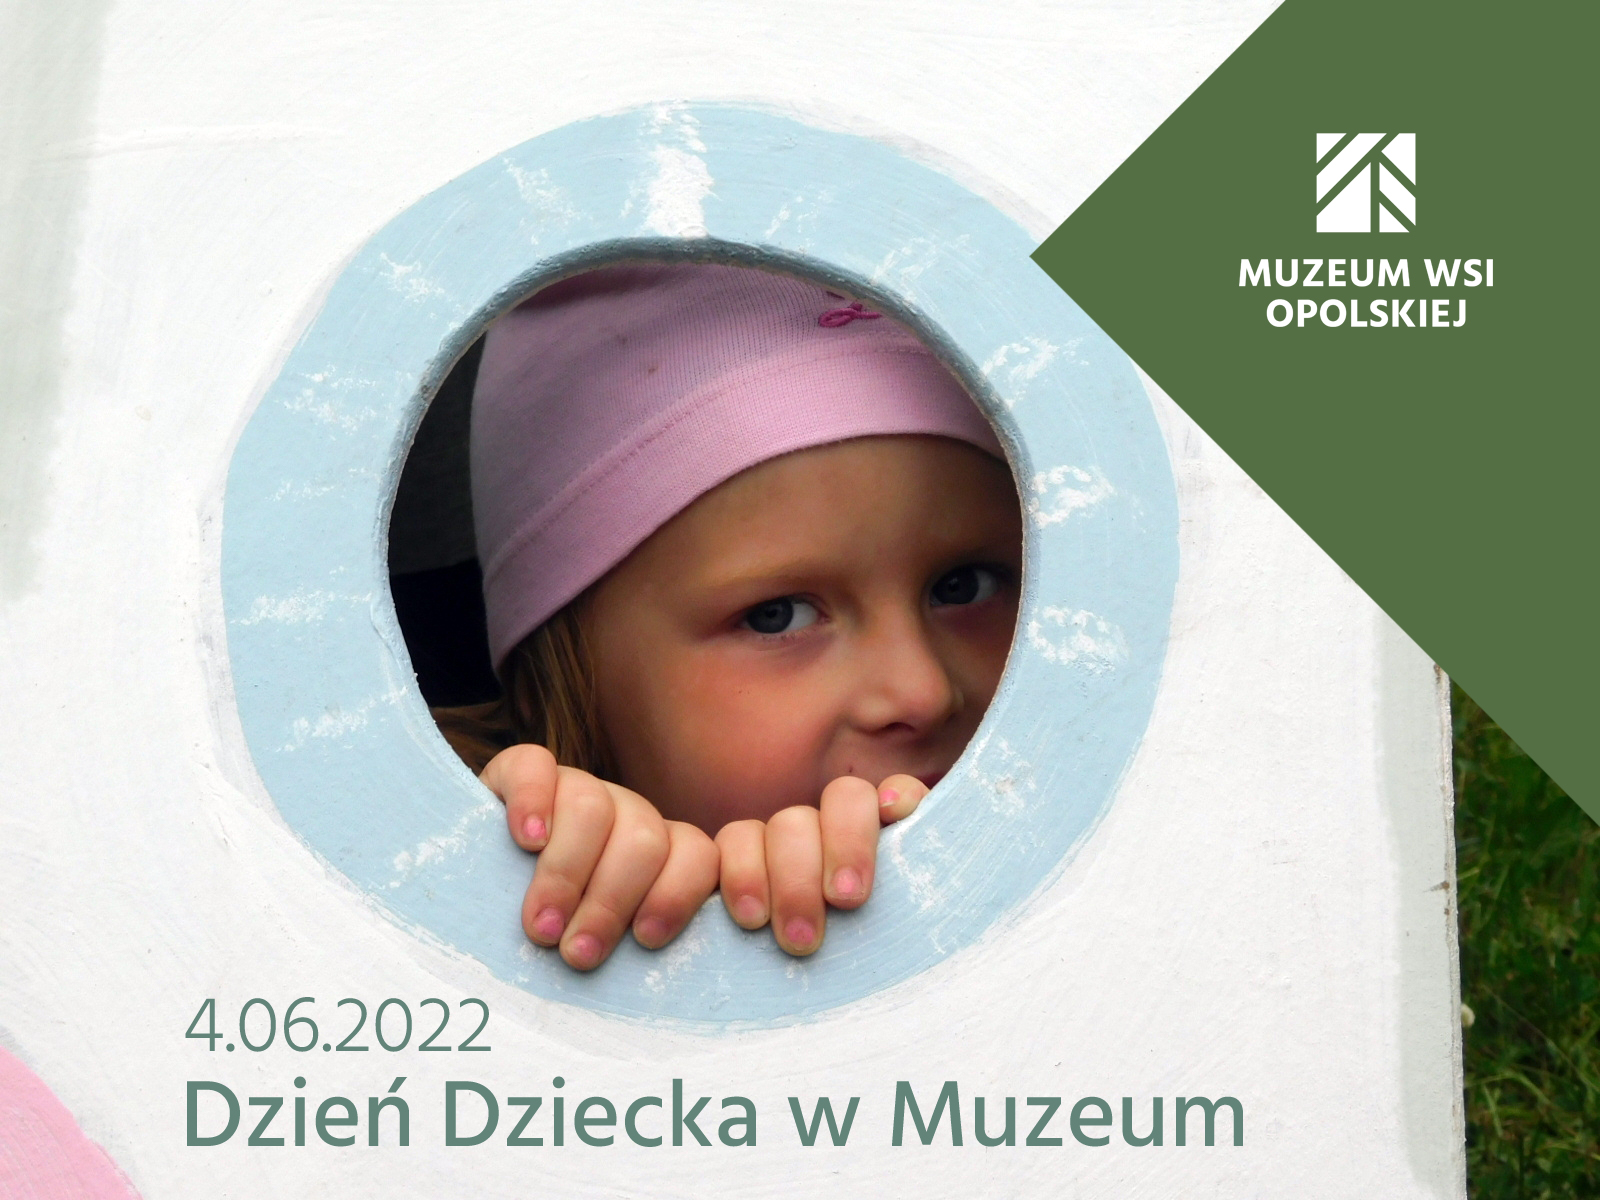 Zdjęcie ukazuje małą dziewczynkę - zaproszenie na Dzień Dziecka w Muzeum.